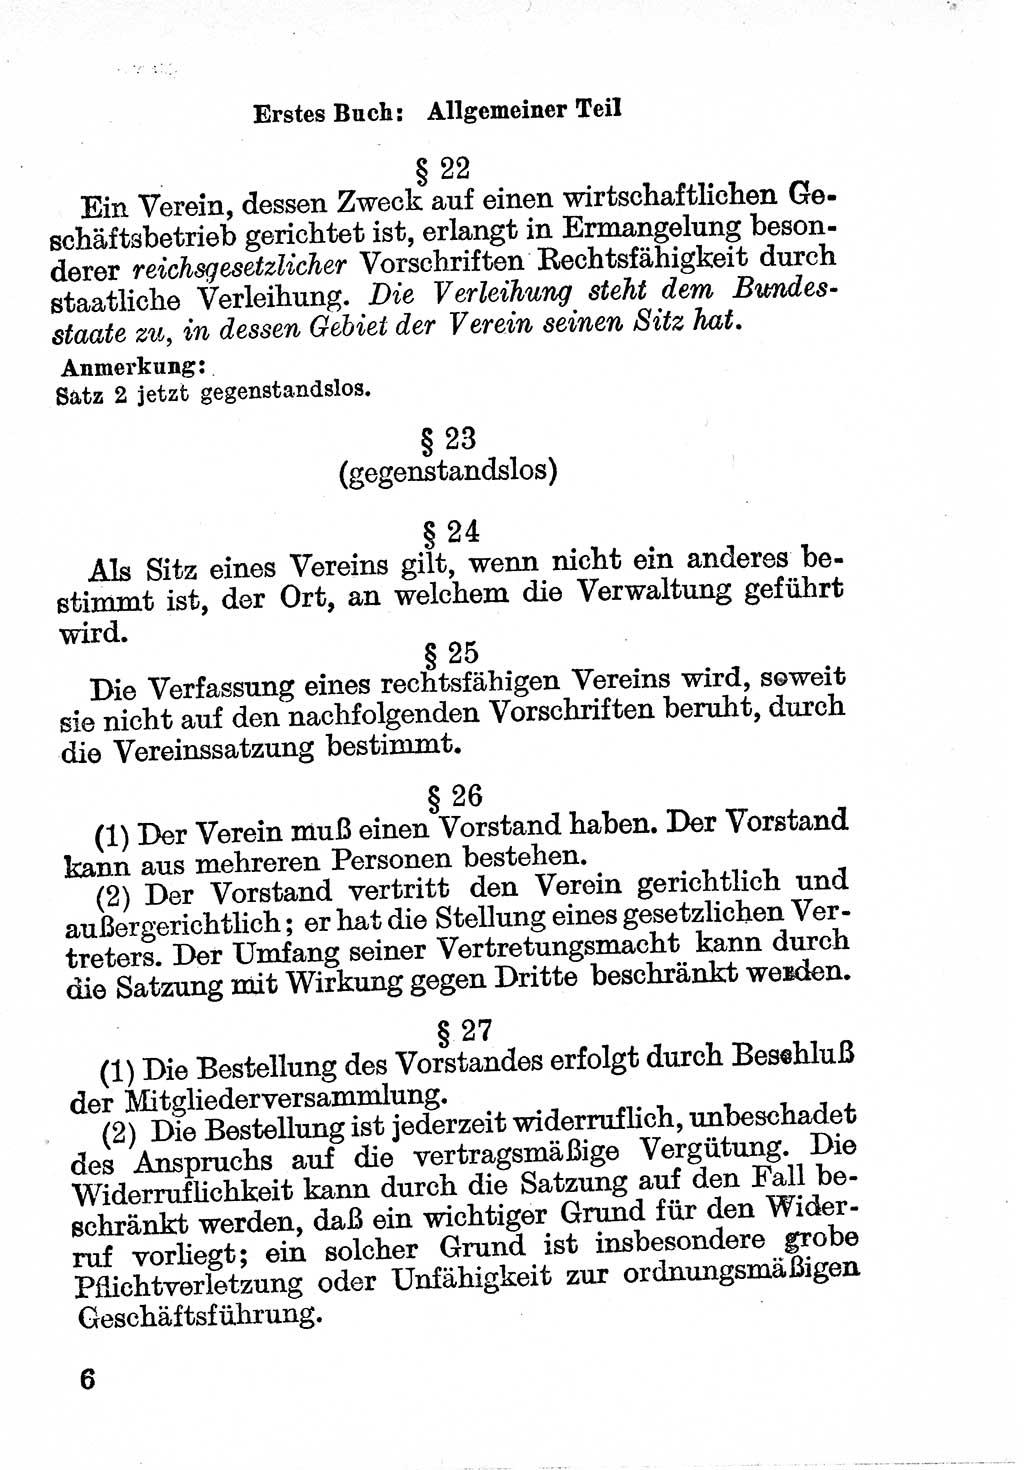 Bürgerliches Gesetzbuch (BGB) nebst wichtigen Nebengesetzen [Deutsche Demokratische Republik (DDR)] 1956, Seite 6 (BGB Nebenges. DDR 1956, S. 6)